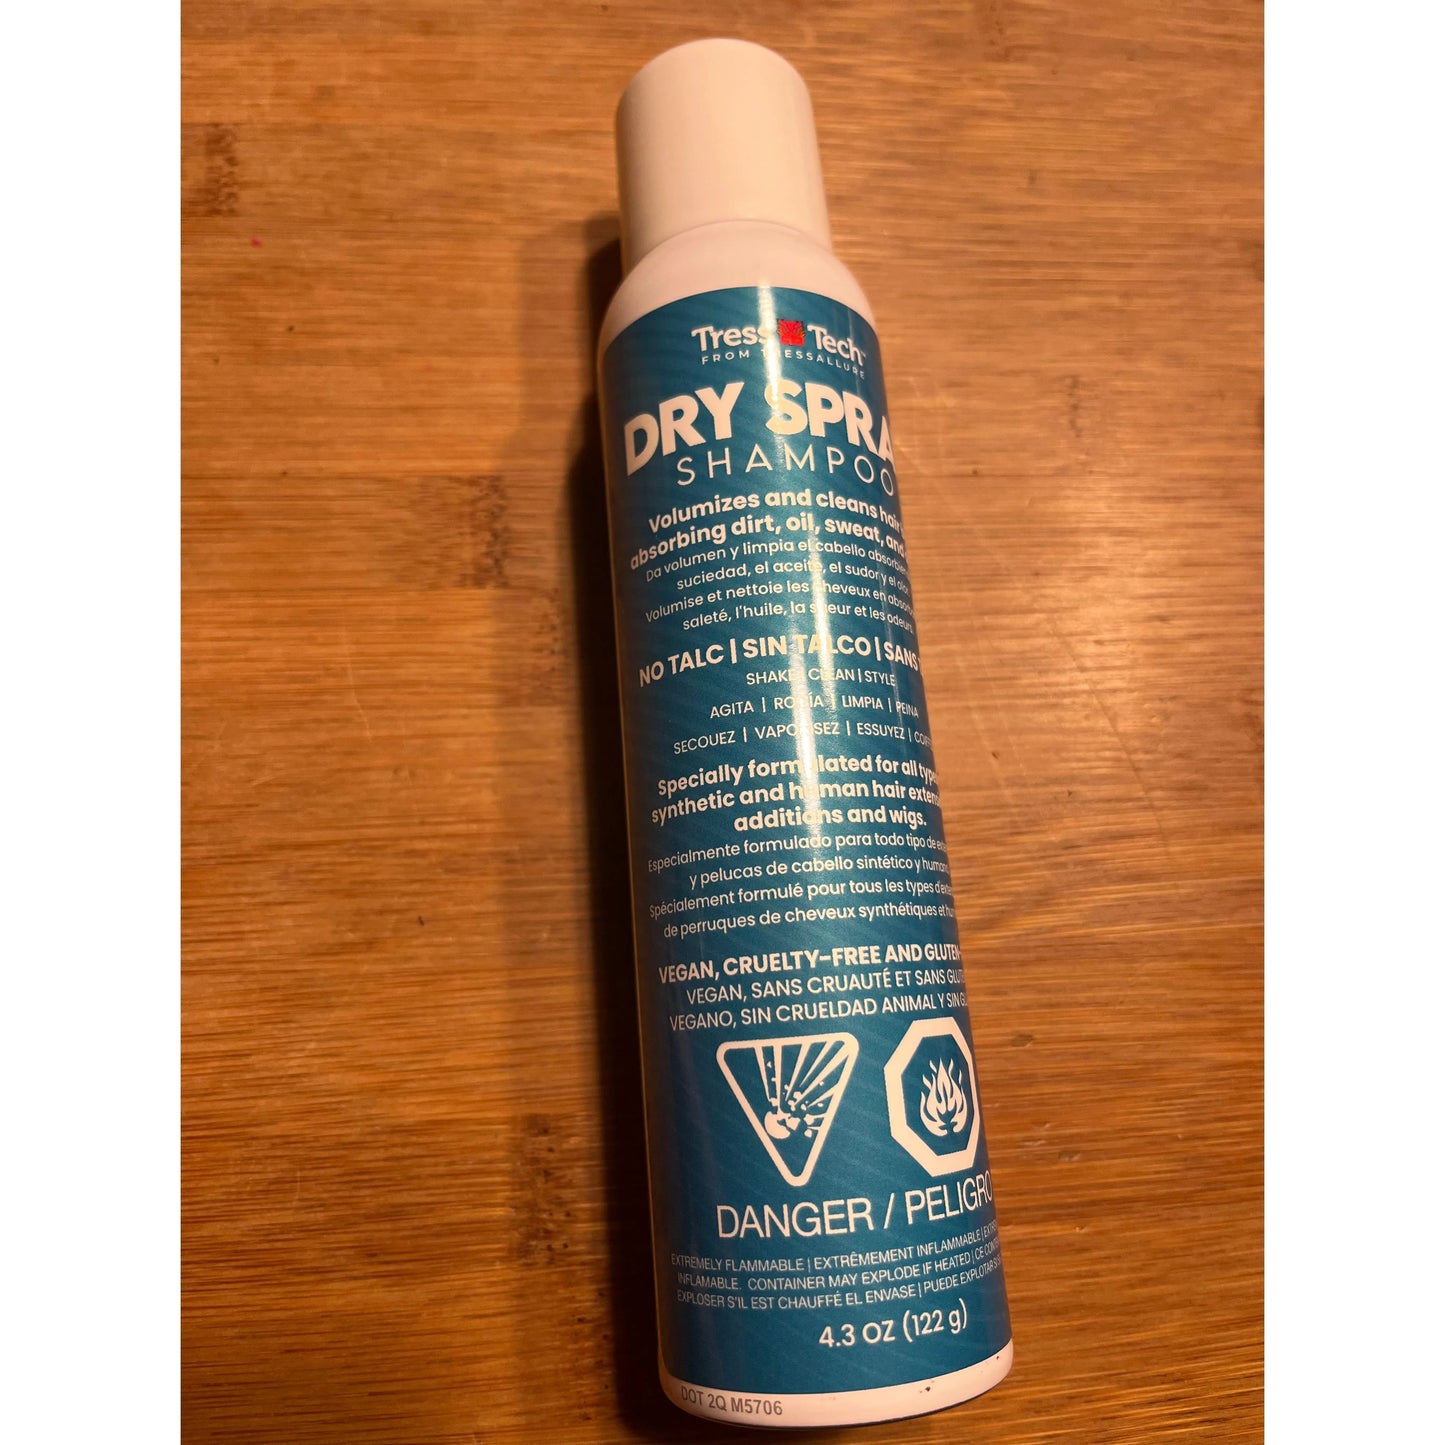 NEW TressTech Dry Spray Shampoo by Tressallure